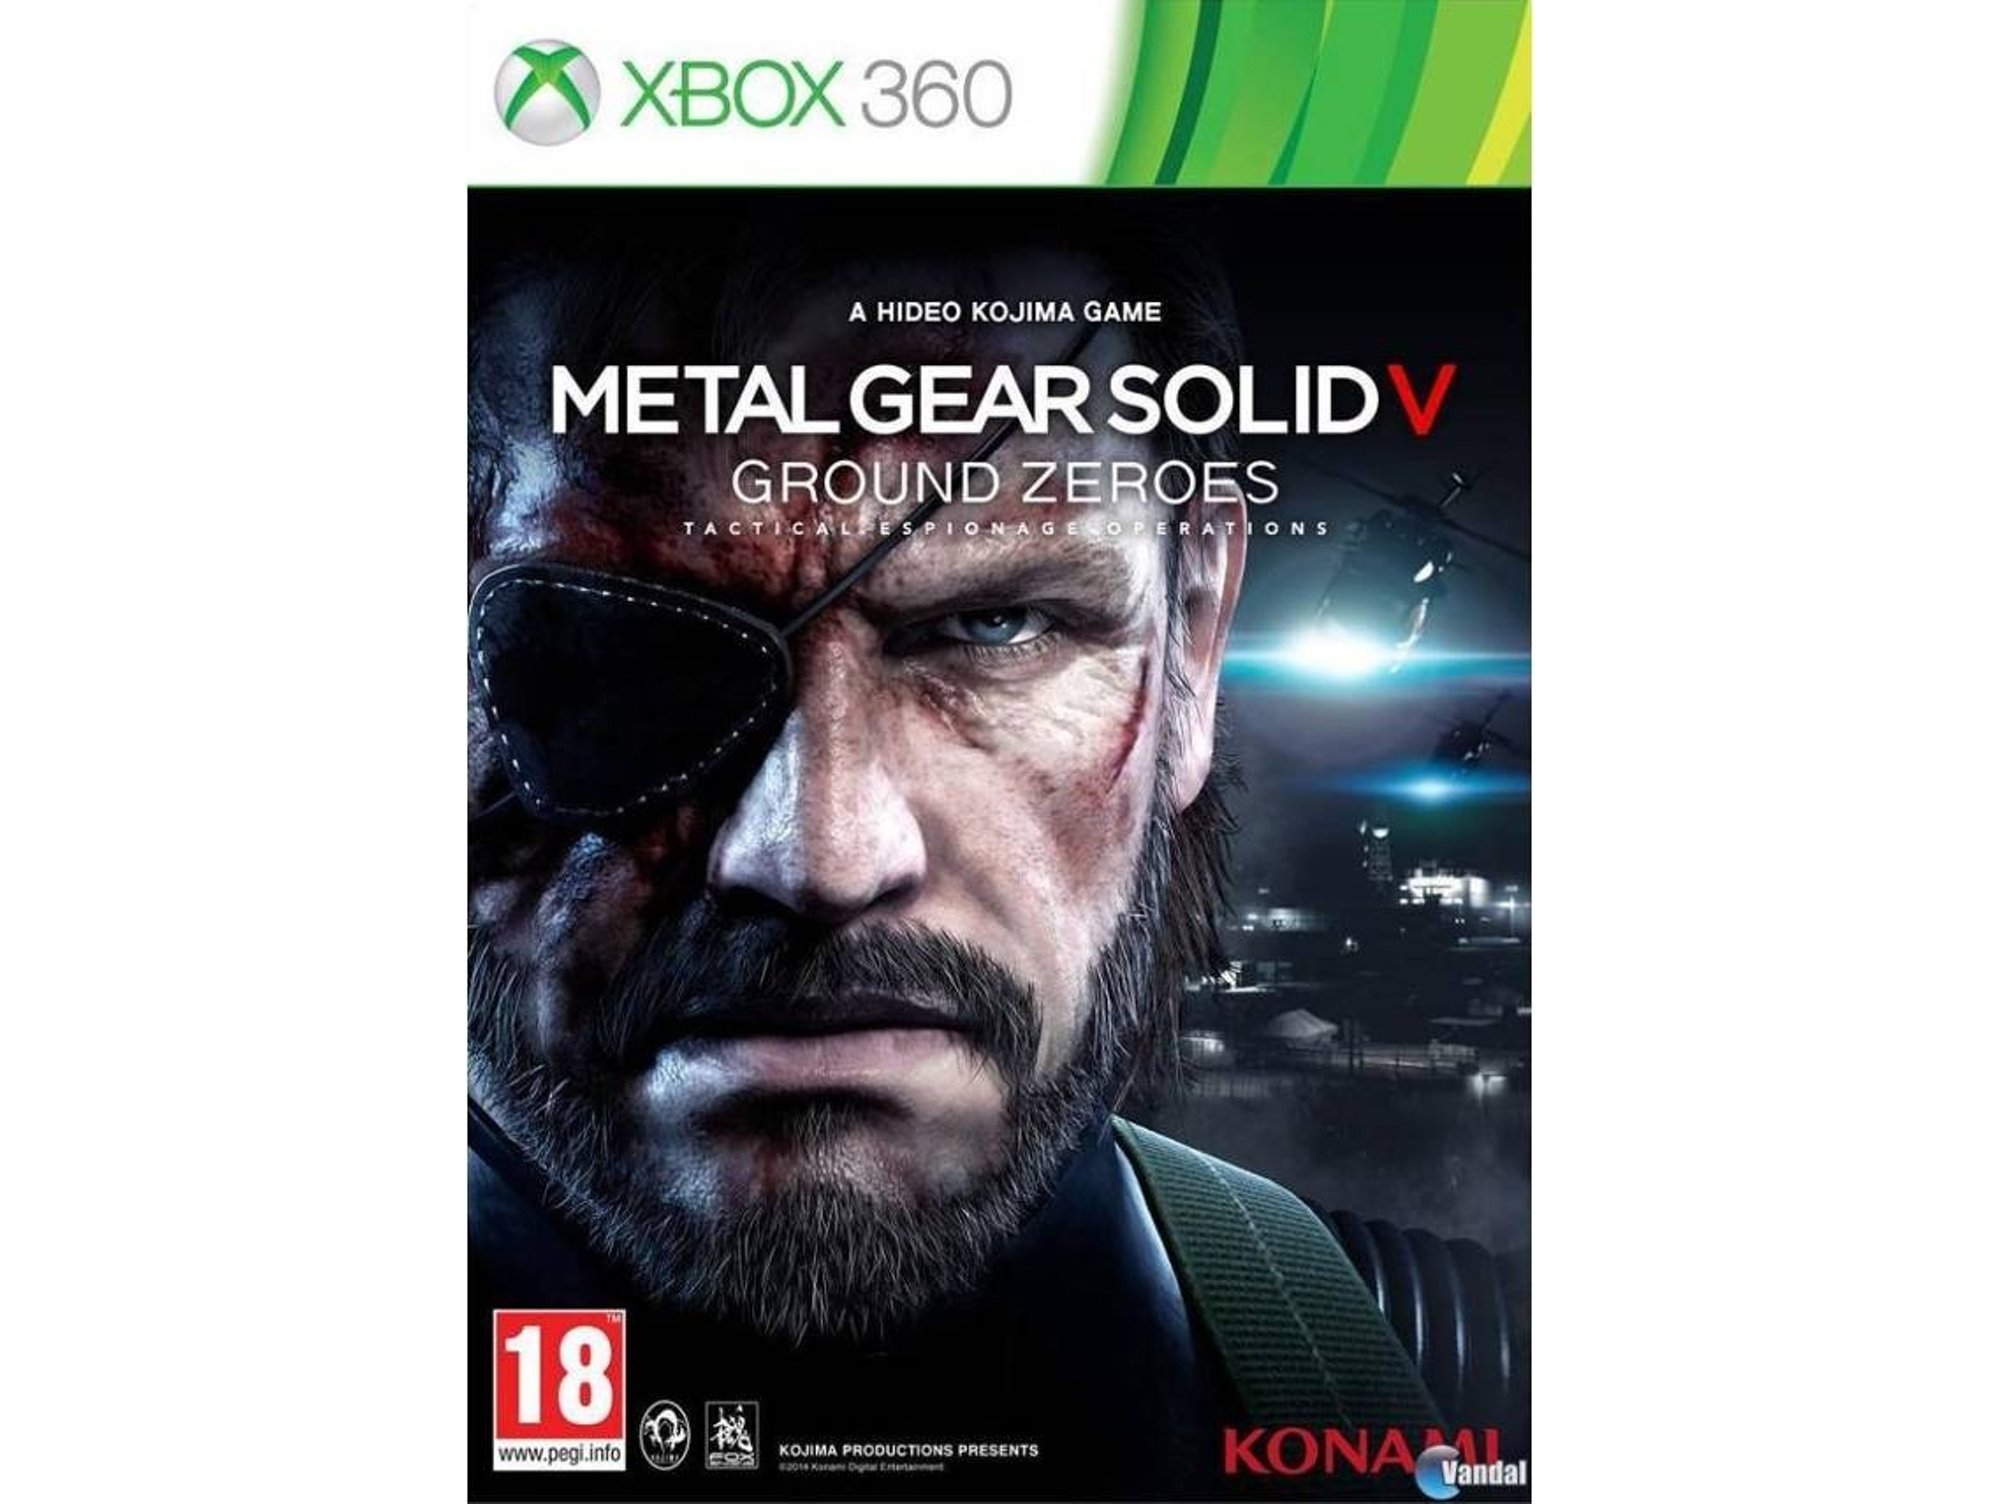 Soviético Intestinos patrulla Juego Xbox 360 KONAMI Metal Gear Solid V: Ground Zeroes